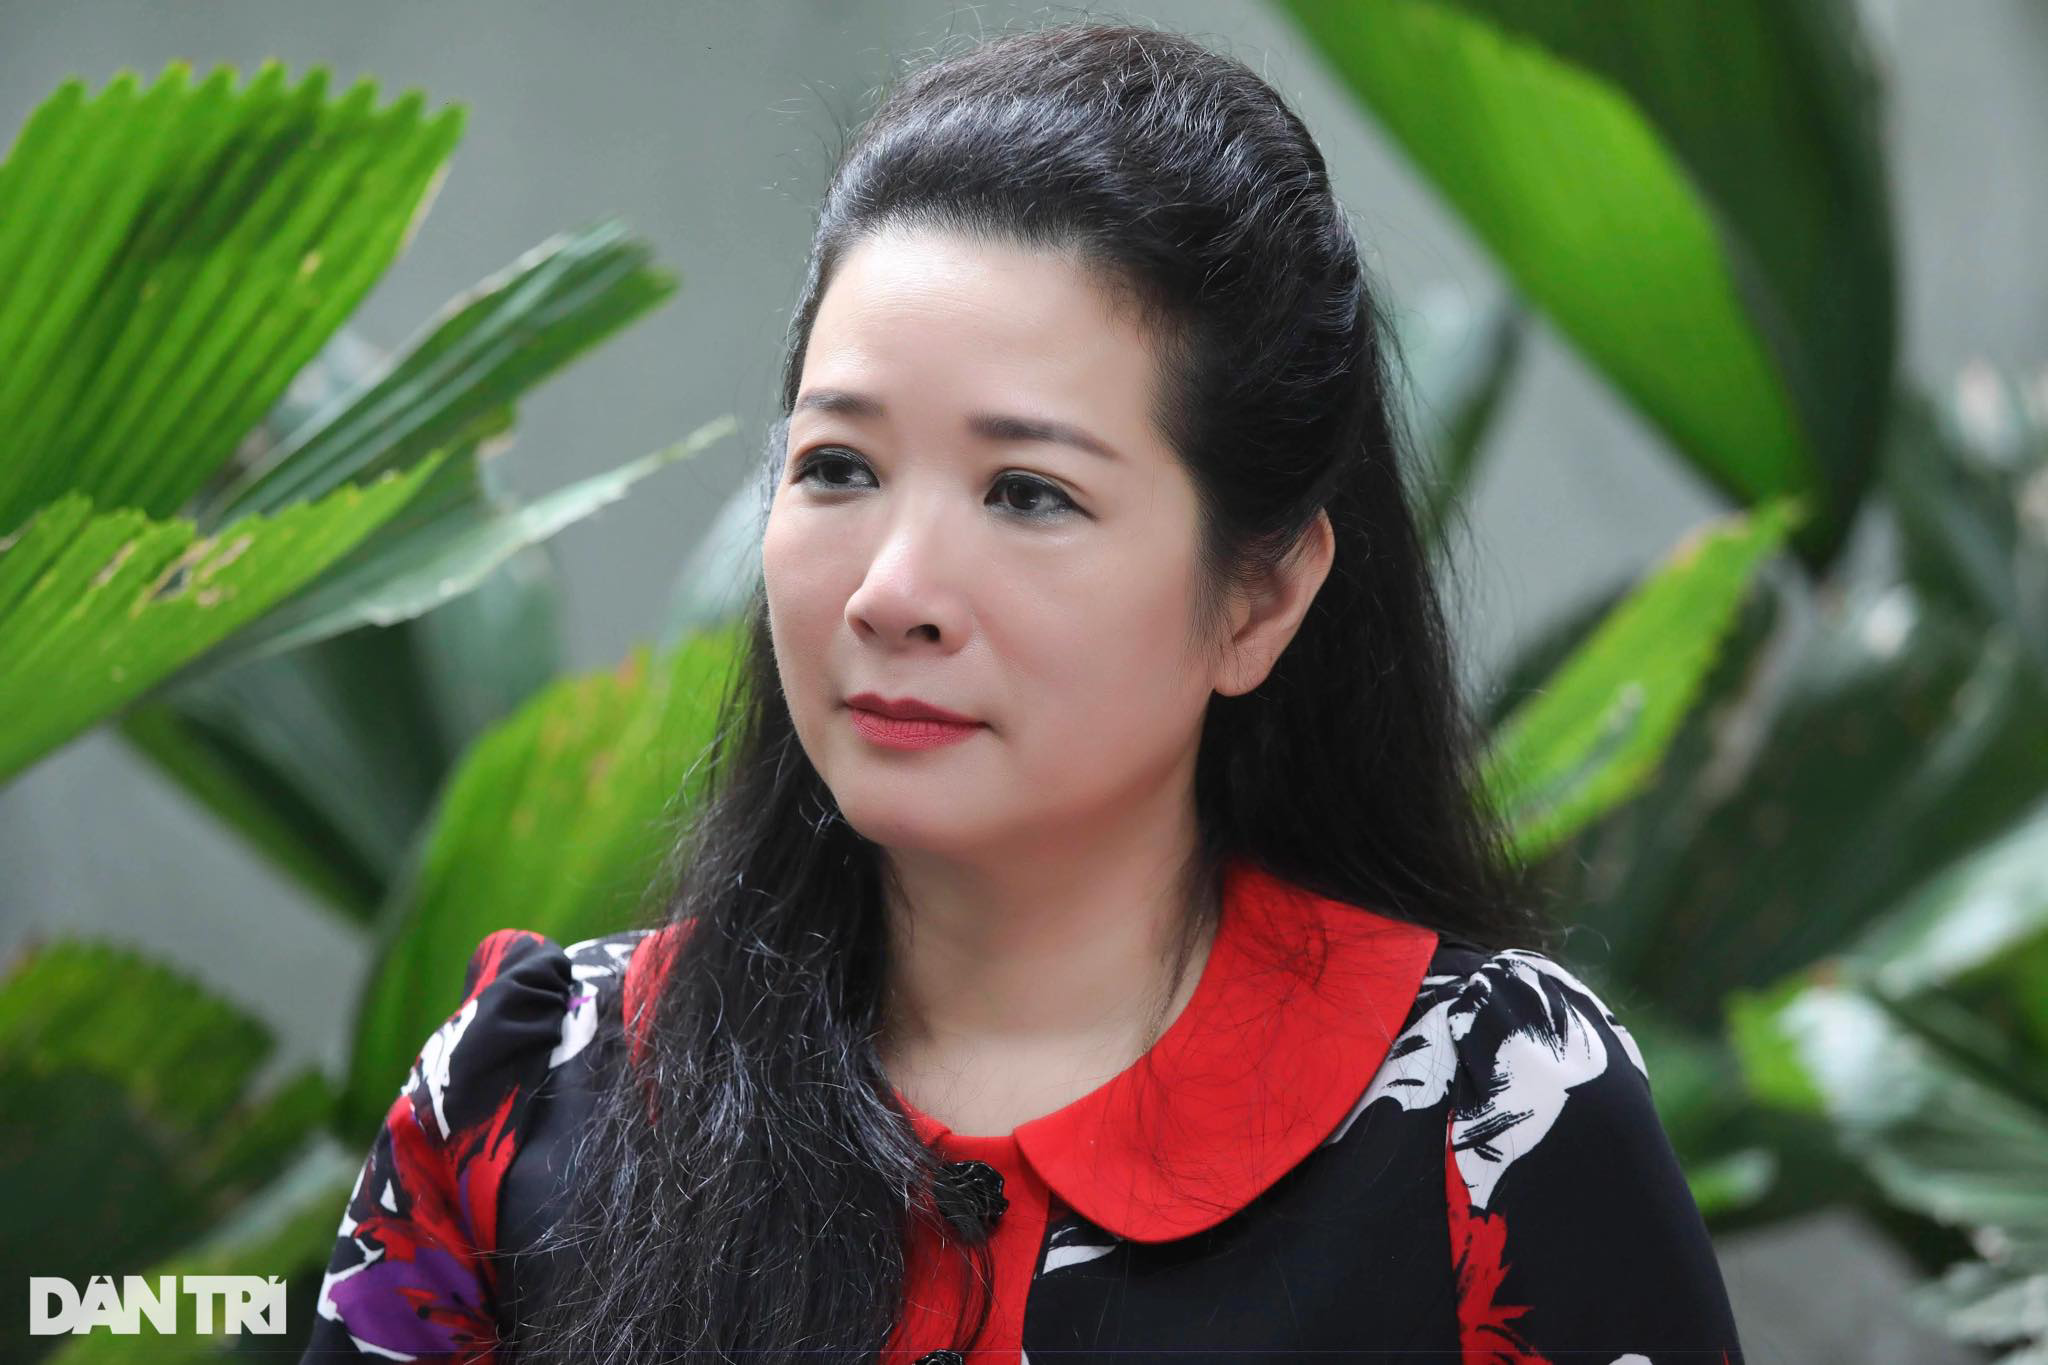 Thanh Thanh Hiền ở tuổi 56: Hay khóc, không muốn nhắc tình cũ